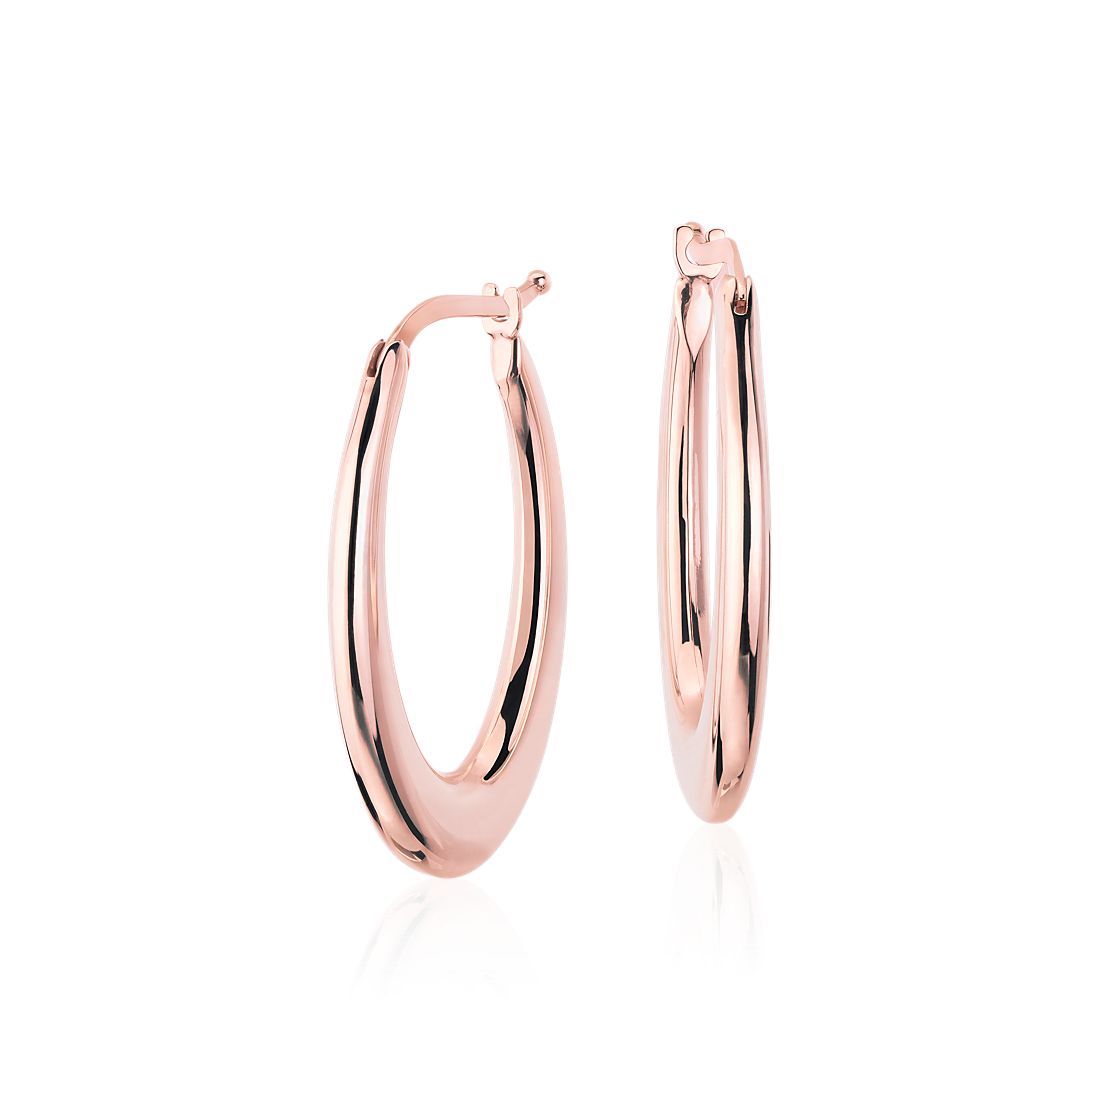 Oval Hoop Earrings in 14k Italian Rose Gold